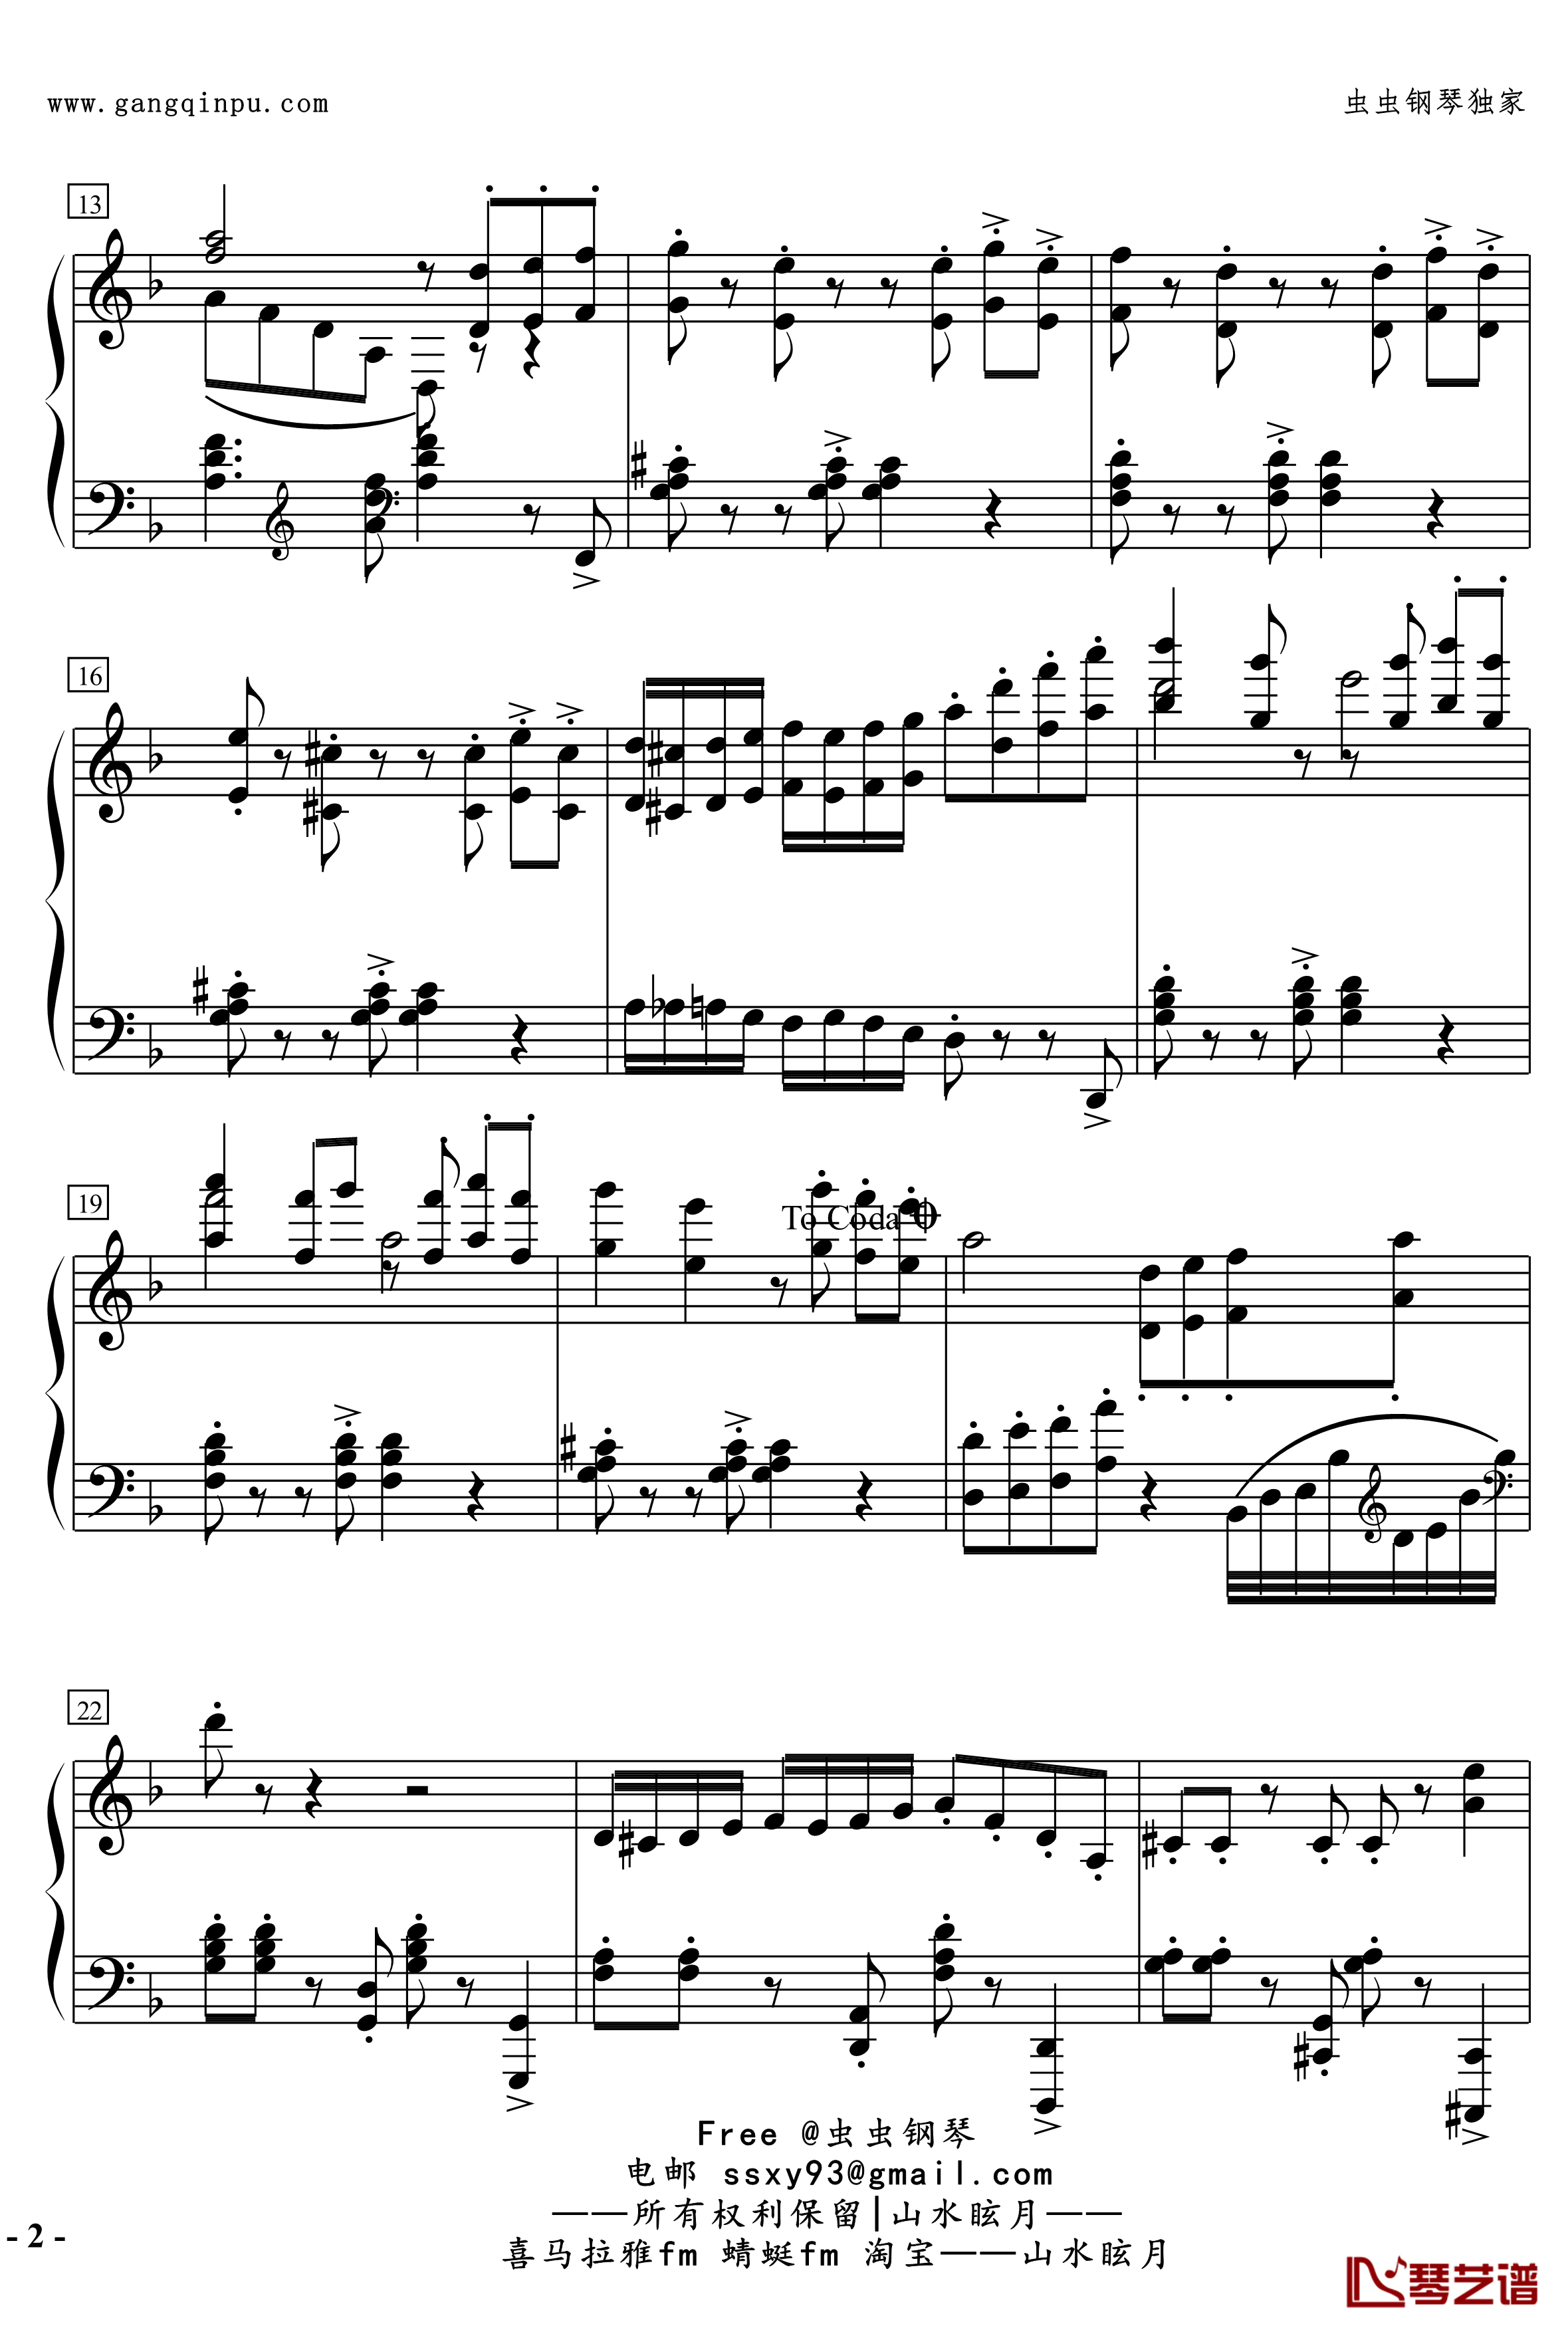 No.2無名探戈钢琴谱-修订-jerry57432